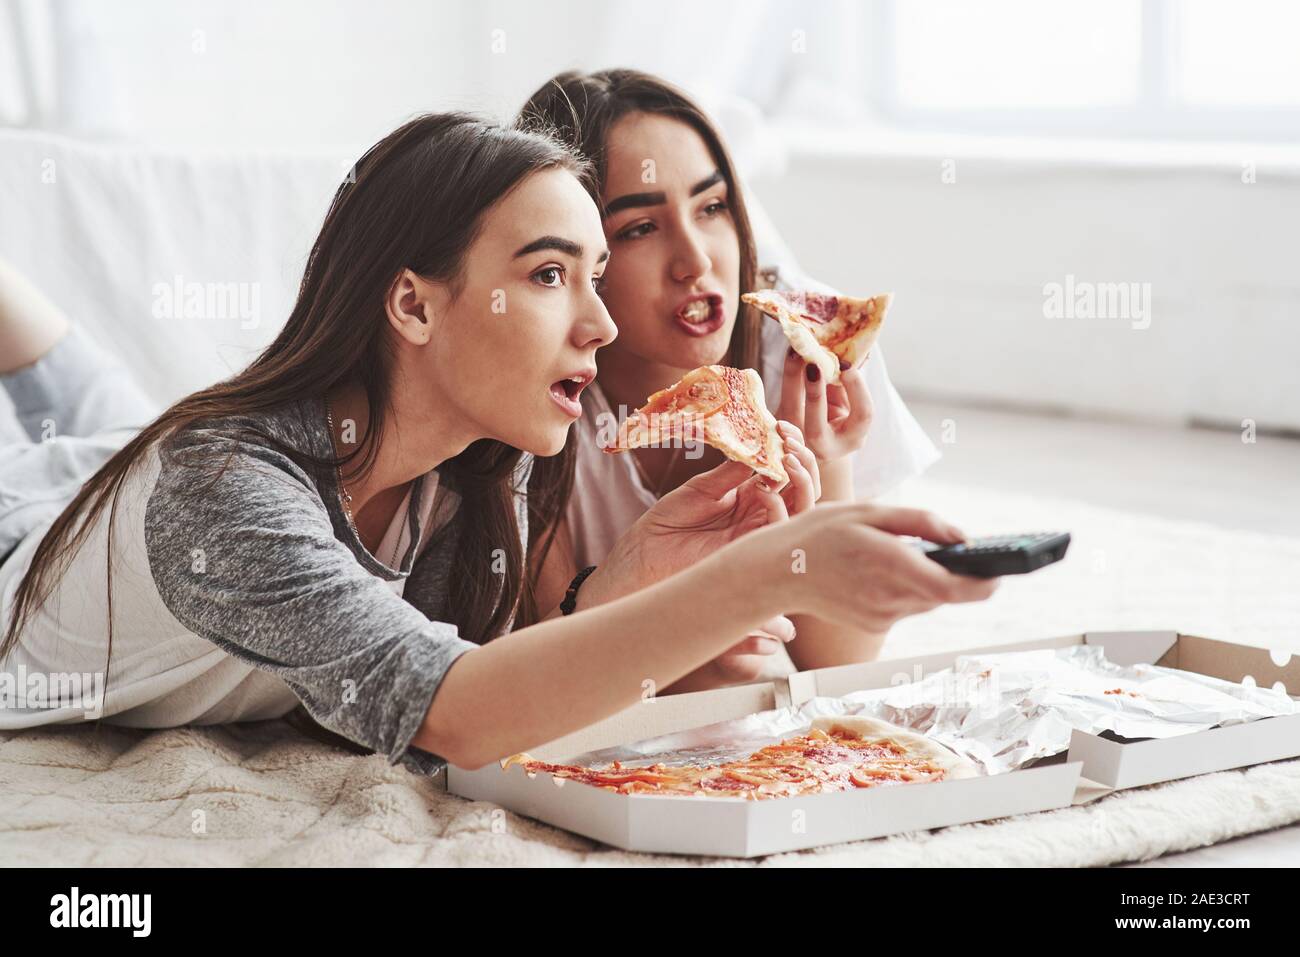 De ninguna manera, ¿has visto eso. Hermanas comer pizza mientras ve la televisión mientras yacían en el suelo de la preciosa habitación en el día Foto de stock